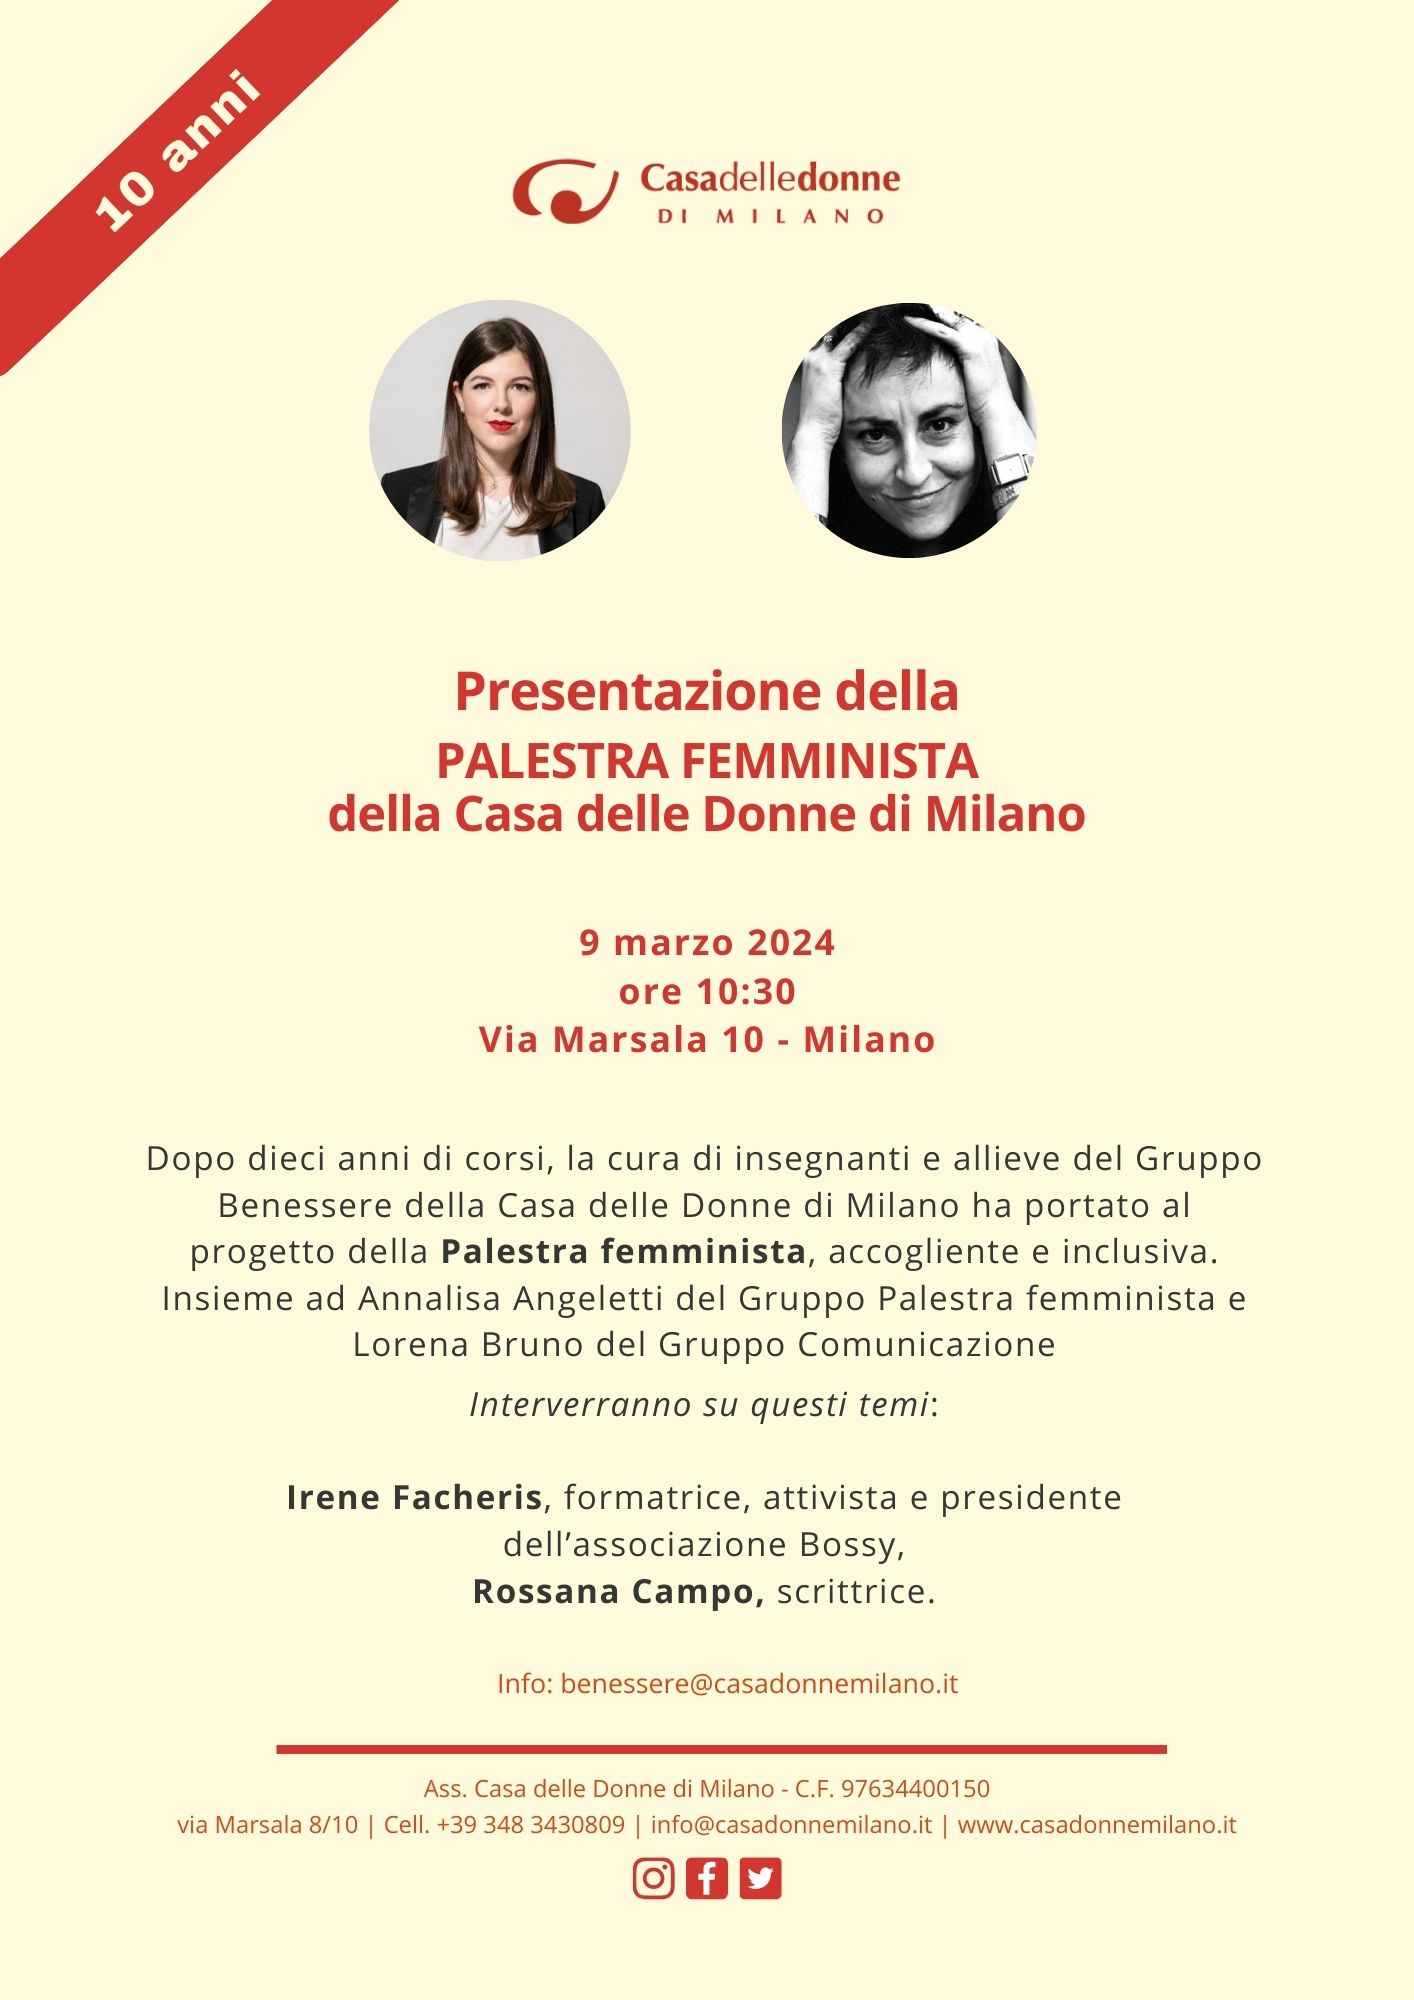 Presentazione della Palestra femminista @ Casa delle Donne di Milano